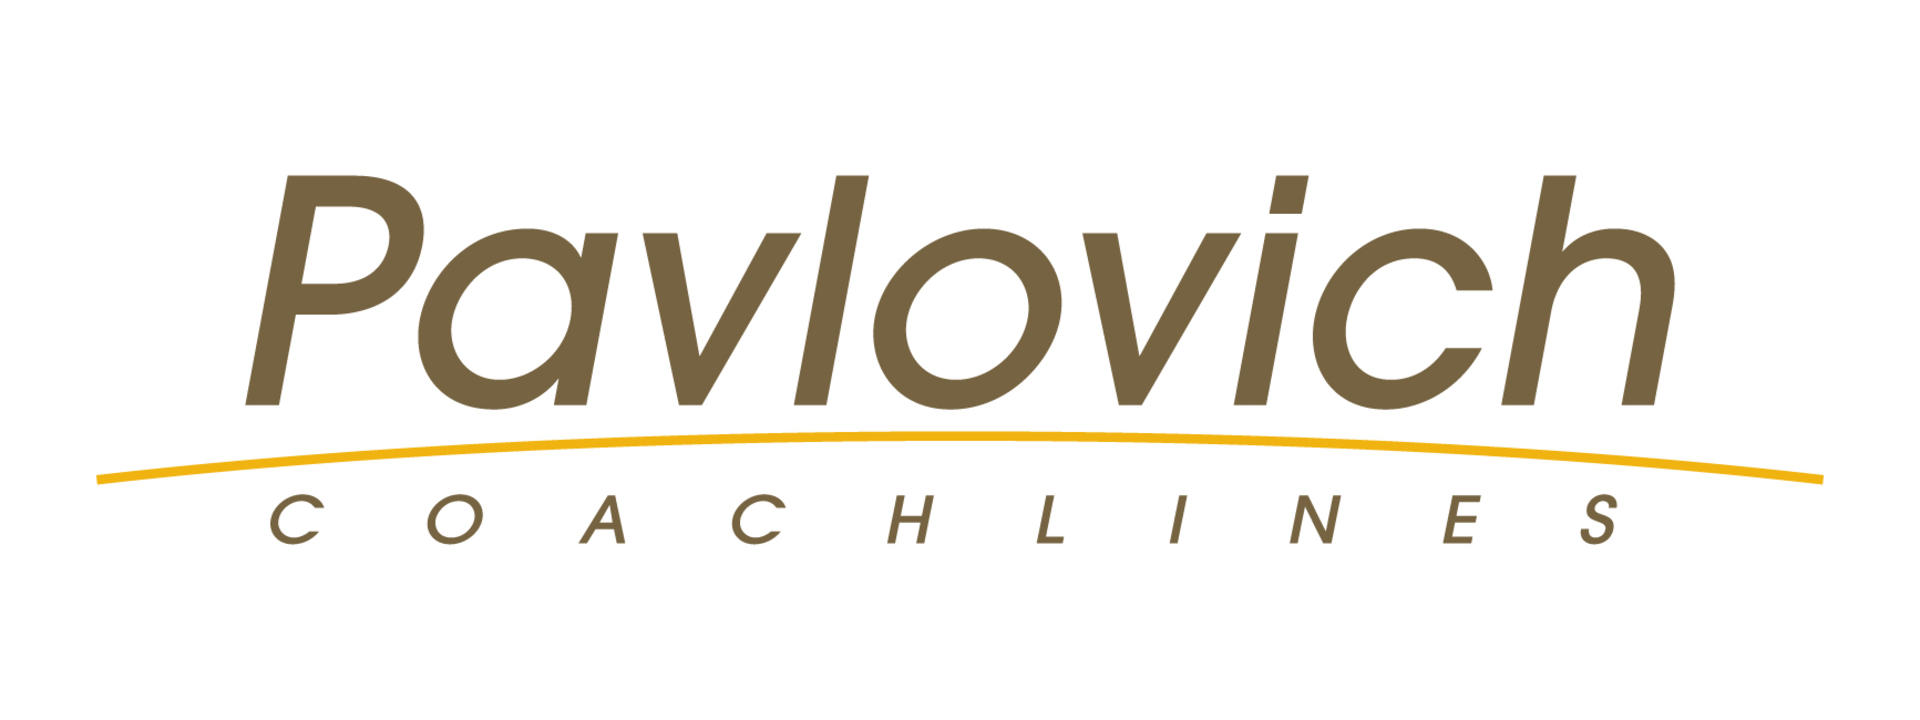 pavlovich-logo-rgb-medium.jpg